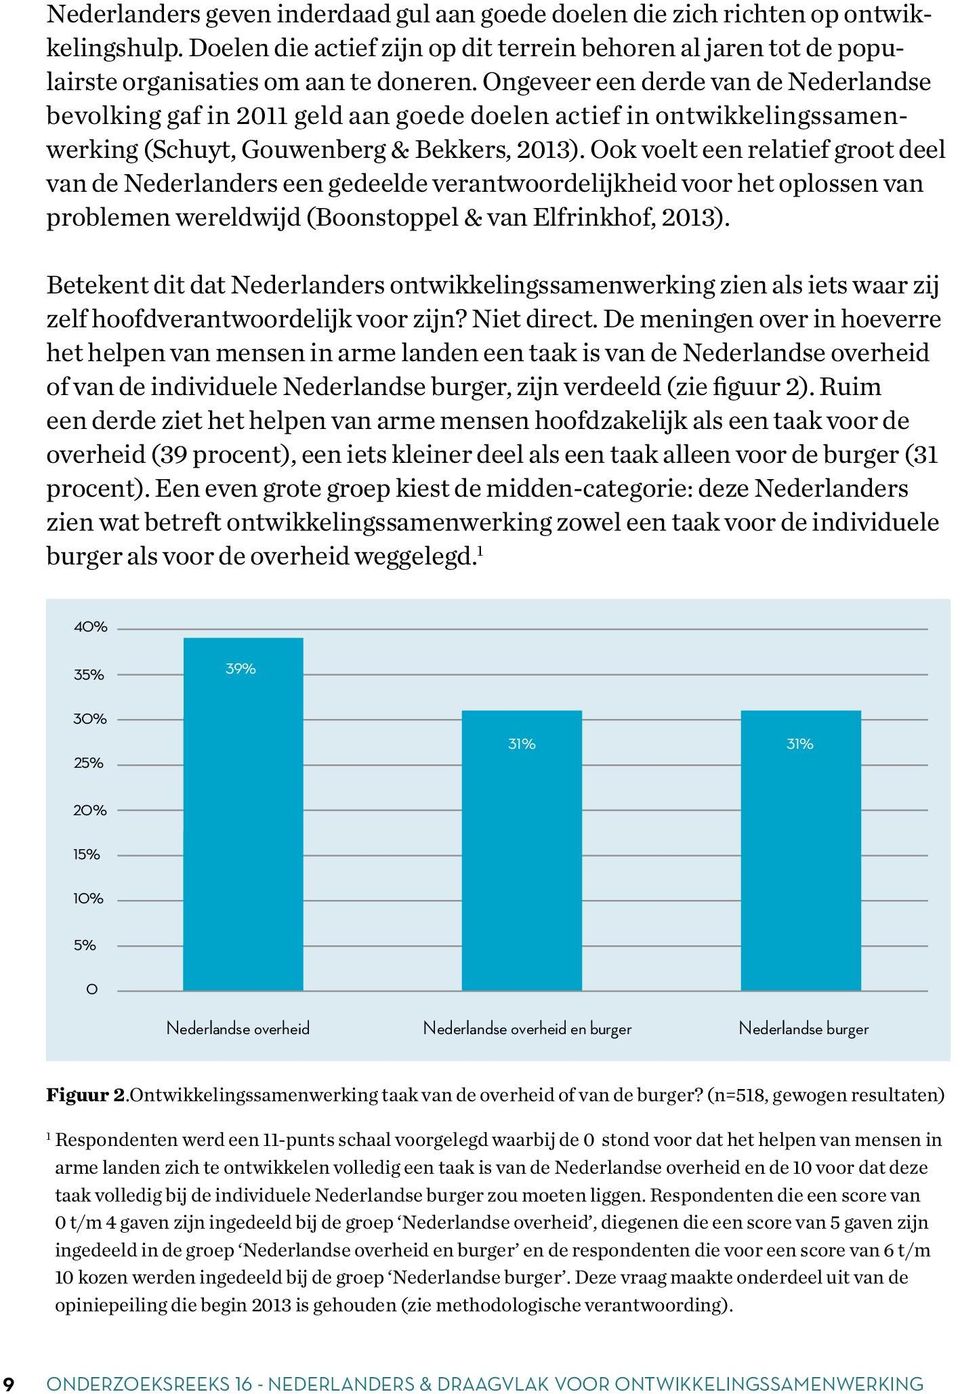 Ook voelt een relatief groot deel van de Nederlanders een gedeelde verantwoordelijkheid voor het oplossen van problemen wereldwijd (Boonstoppel & van Elfrinkhof, 2013).